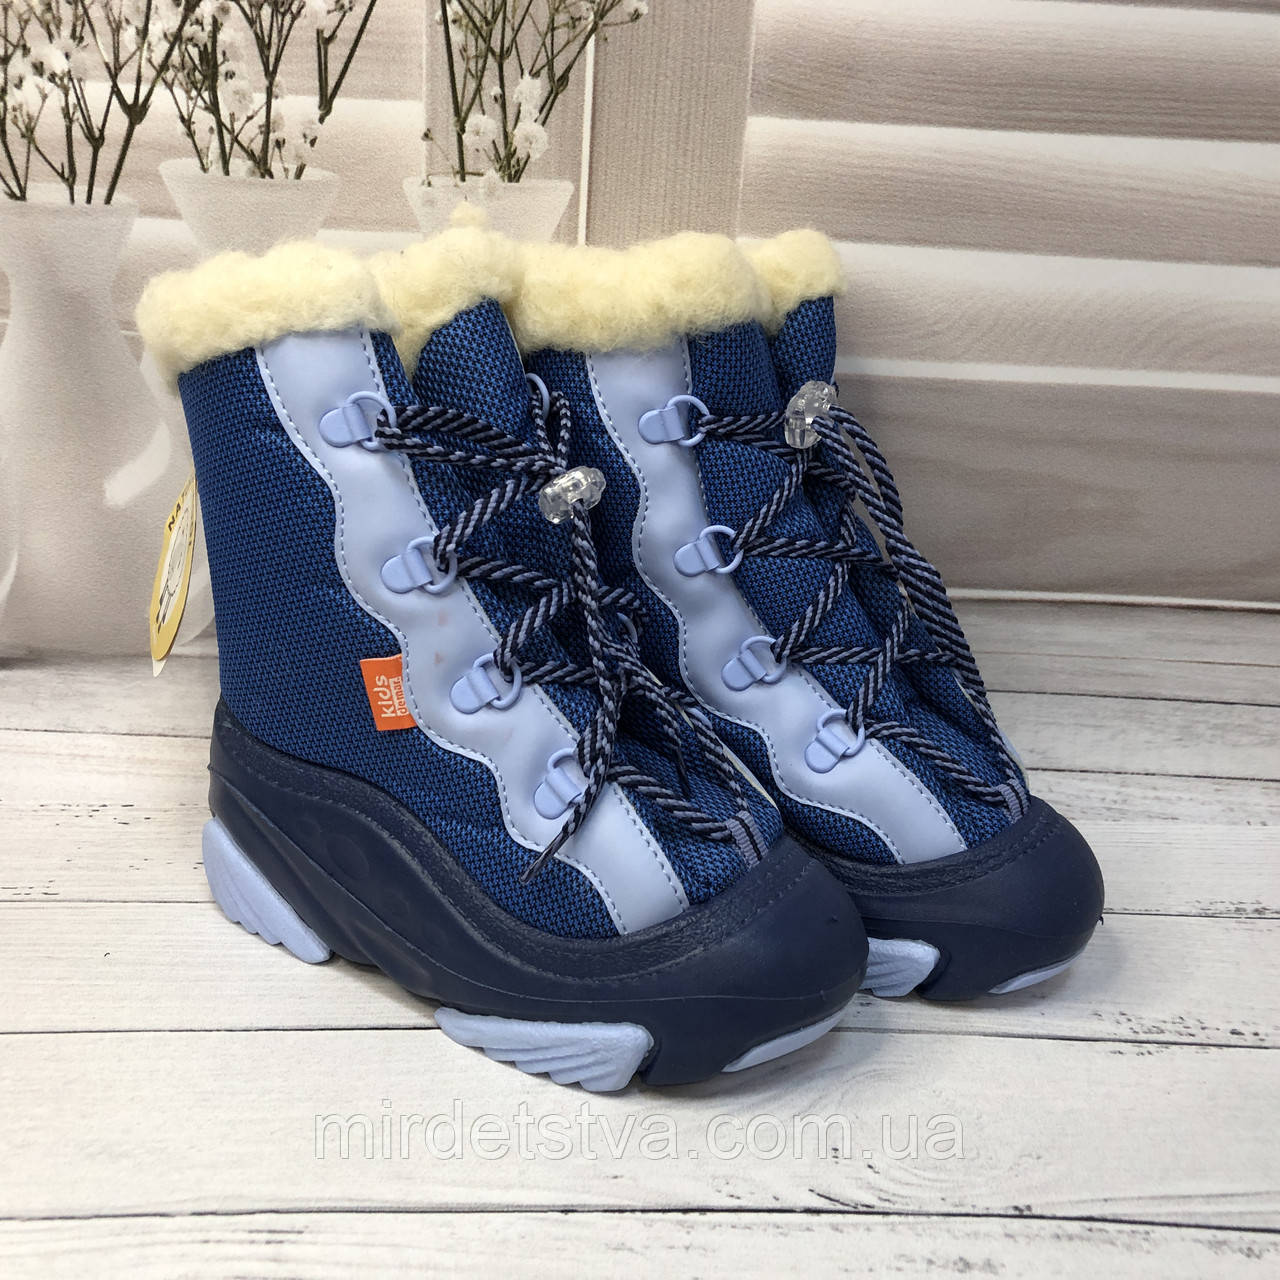 Зимові дитячі чоботи на овчині для хлопчика Demar Snow Mar сині